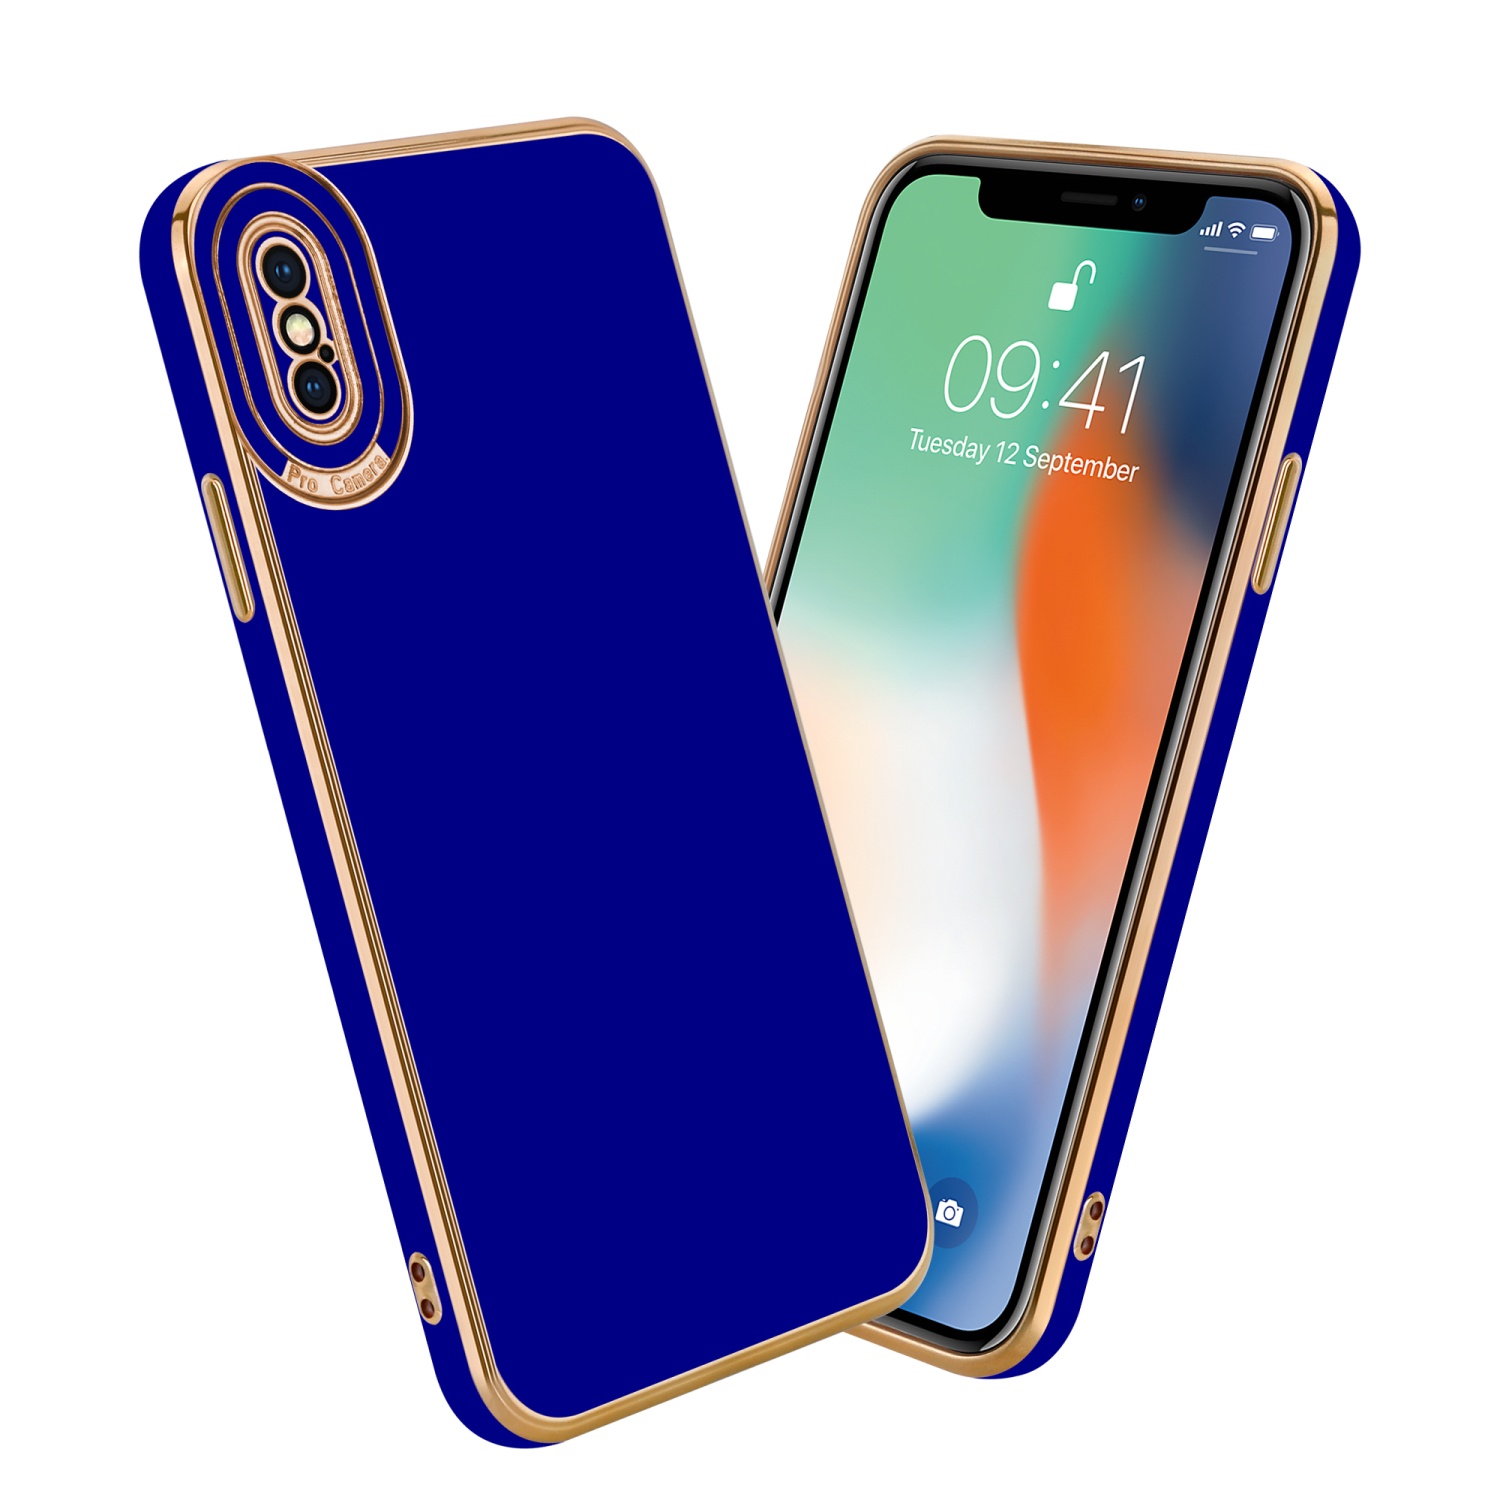 Coque pour Apple iPhone XS MAX en Glossy Bleu - Or Rose Housse de protection Étui en silicone TPU flexible et avec protection pour appareil photo